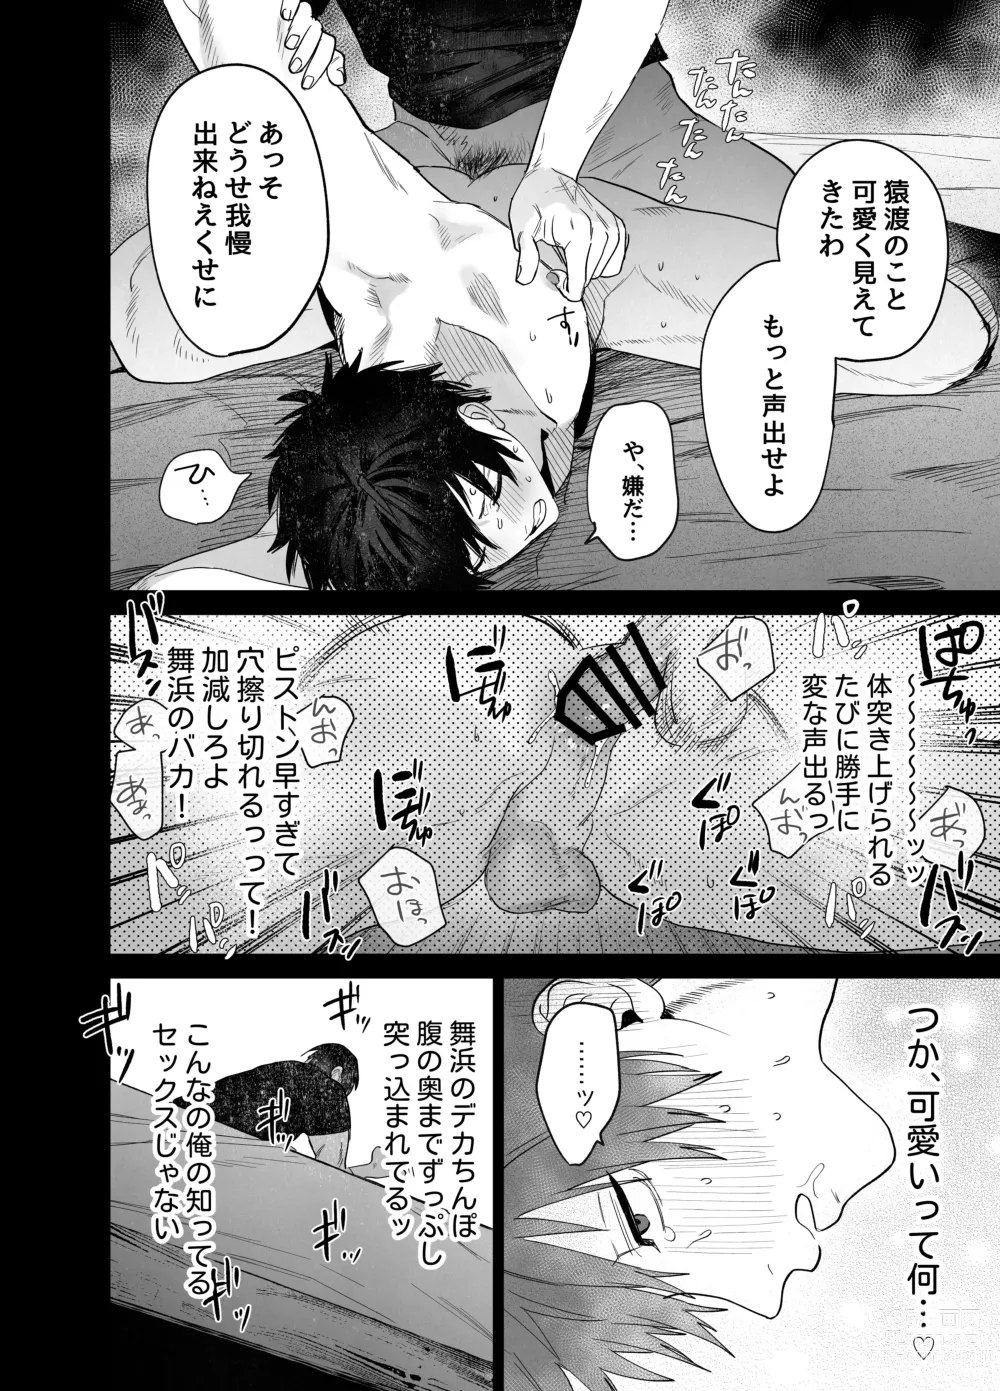 Page 35 of doujinshi Fujun Osu Ana Kouyuu